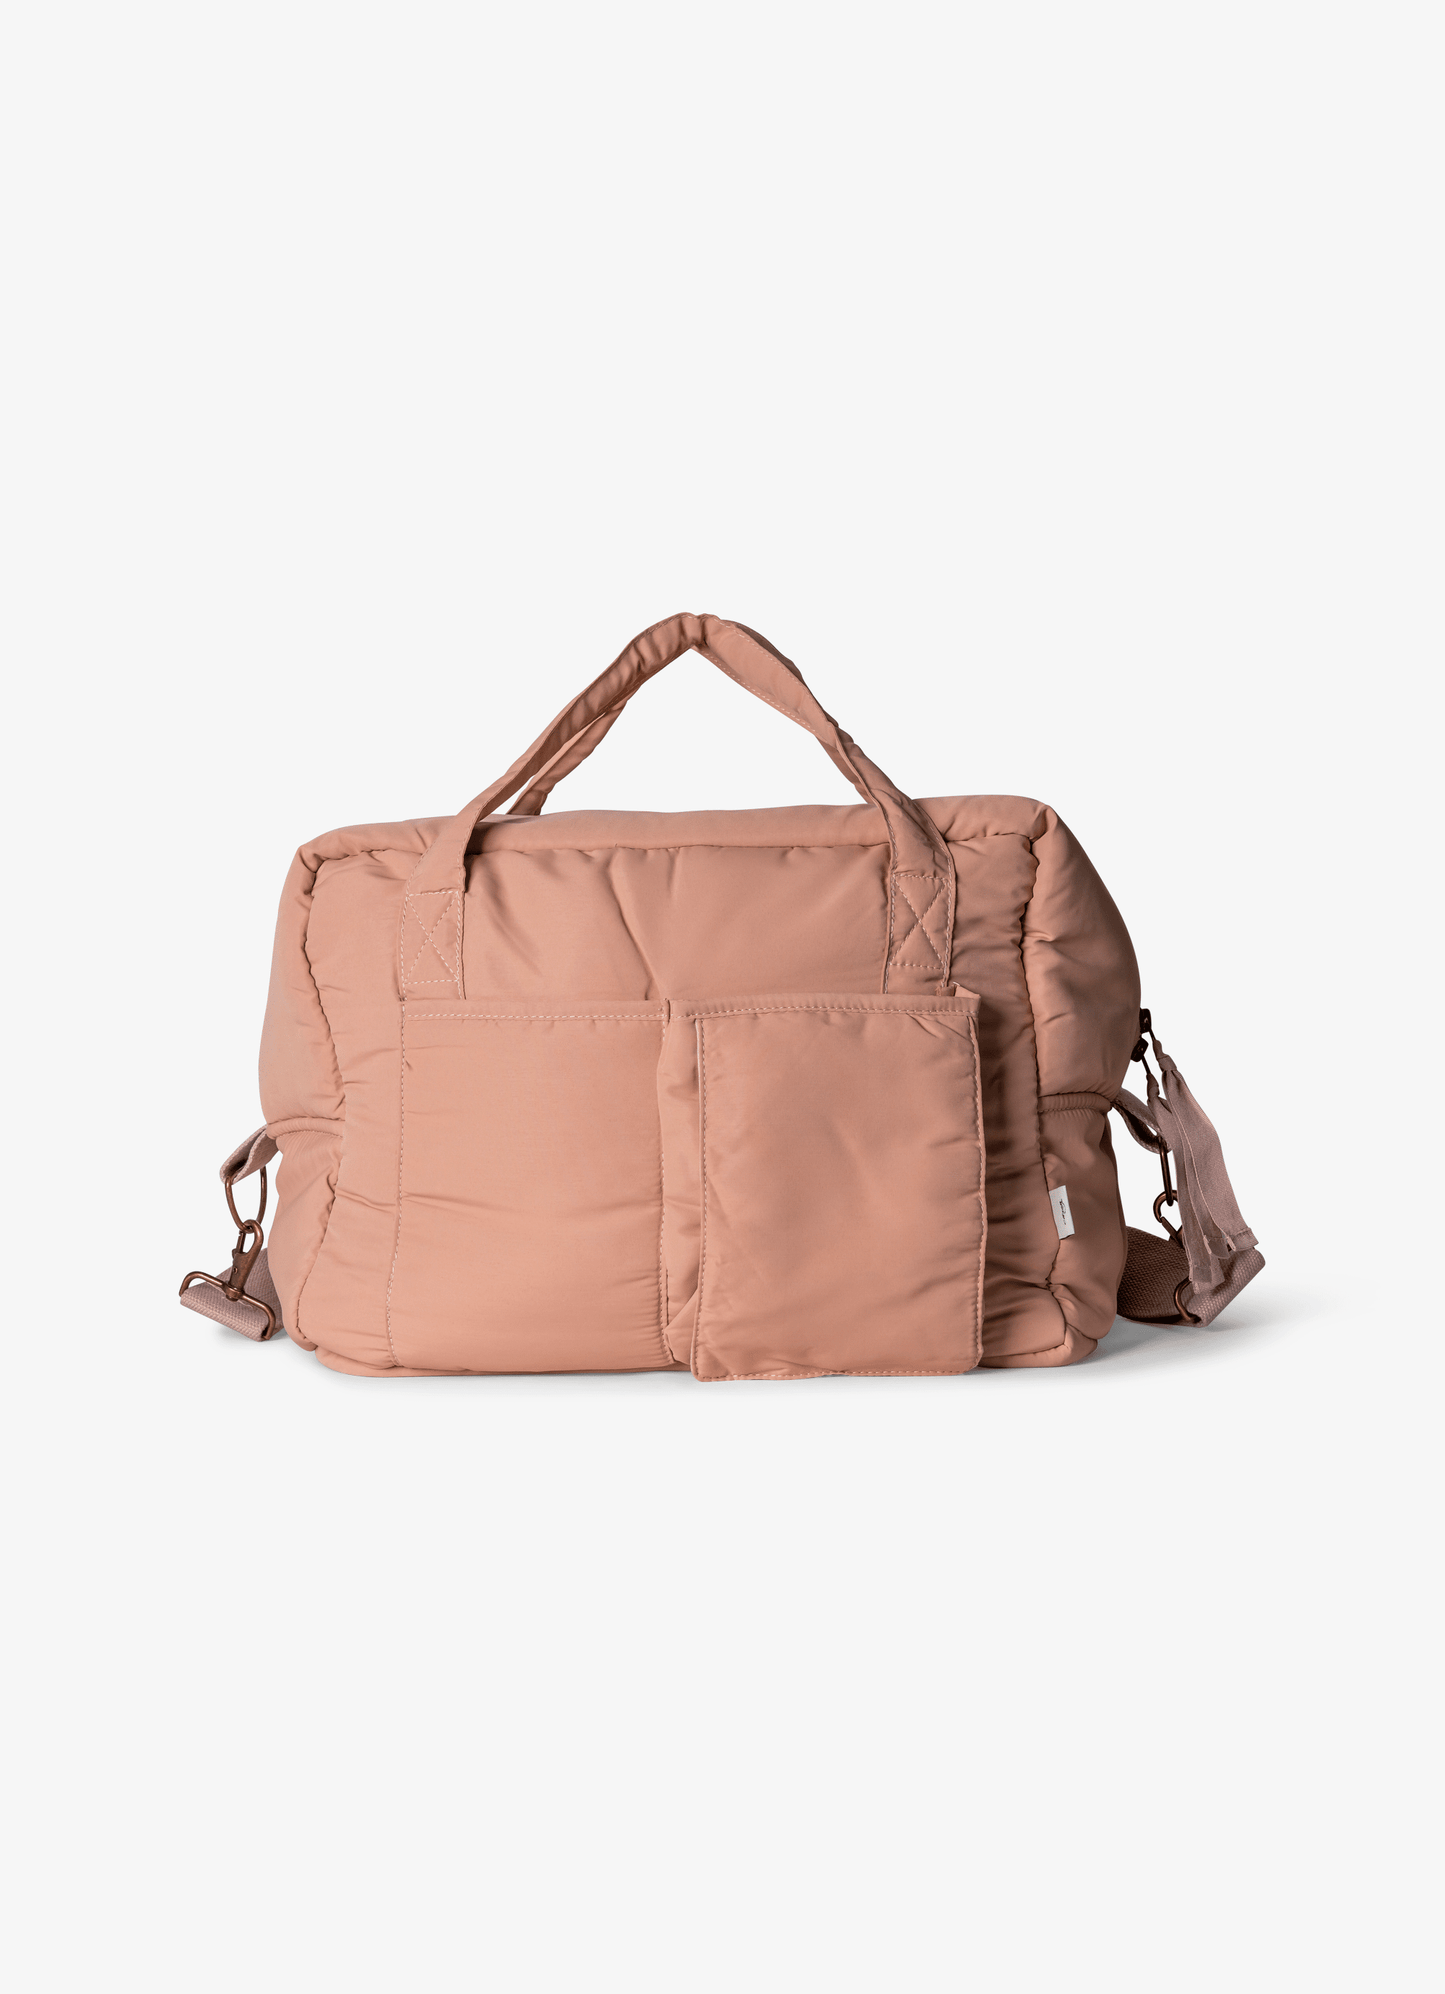 Multi Purpose Bag - Blush Pink